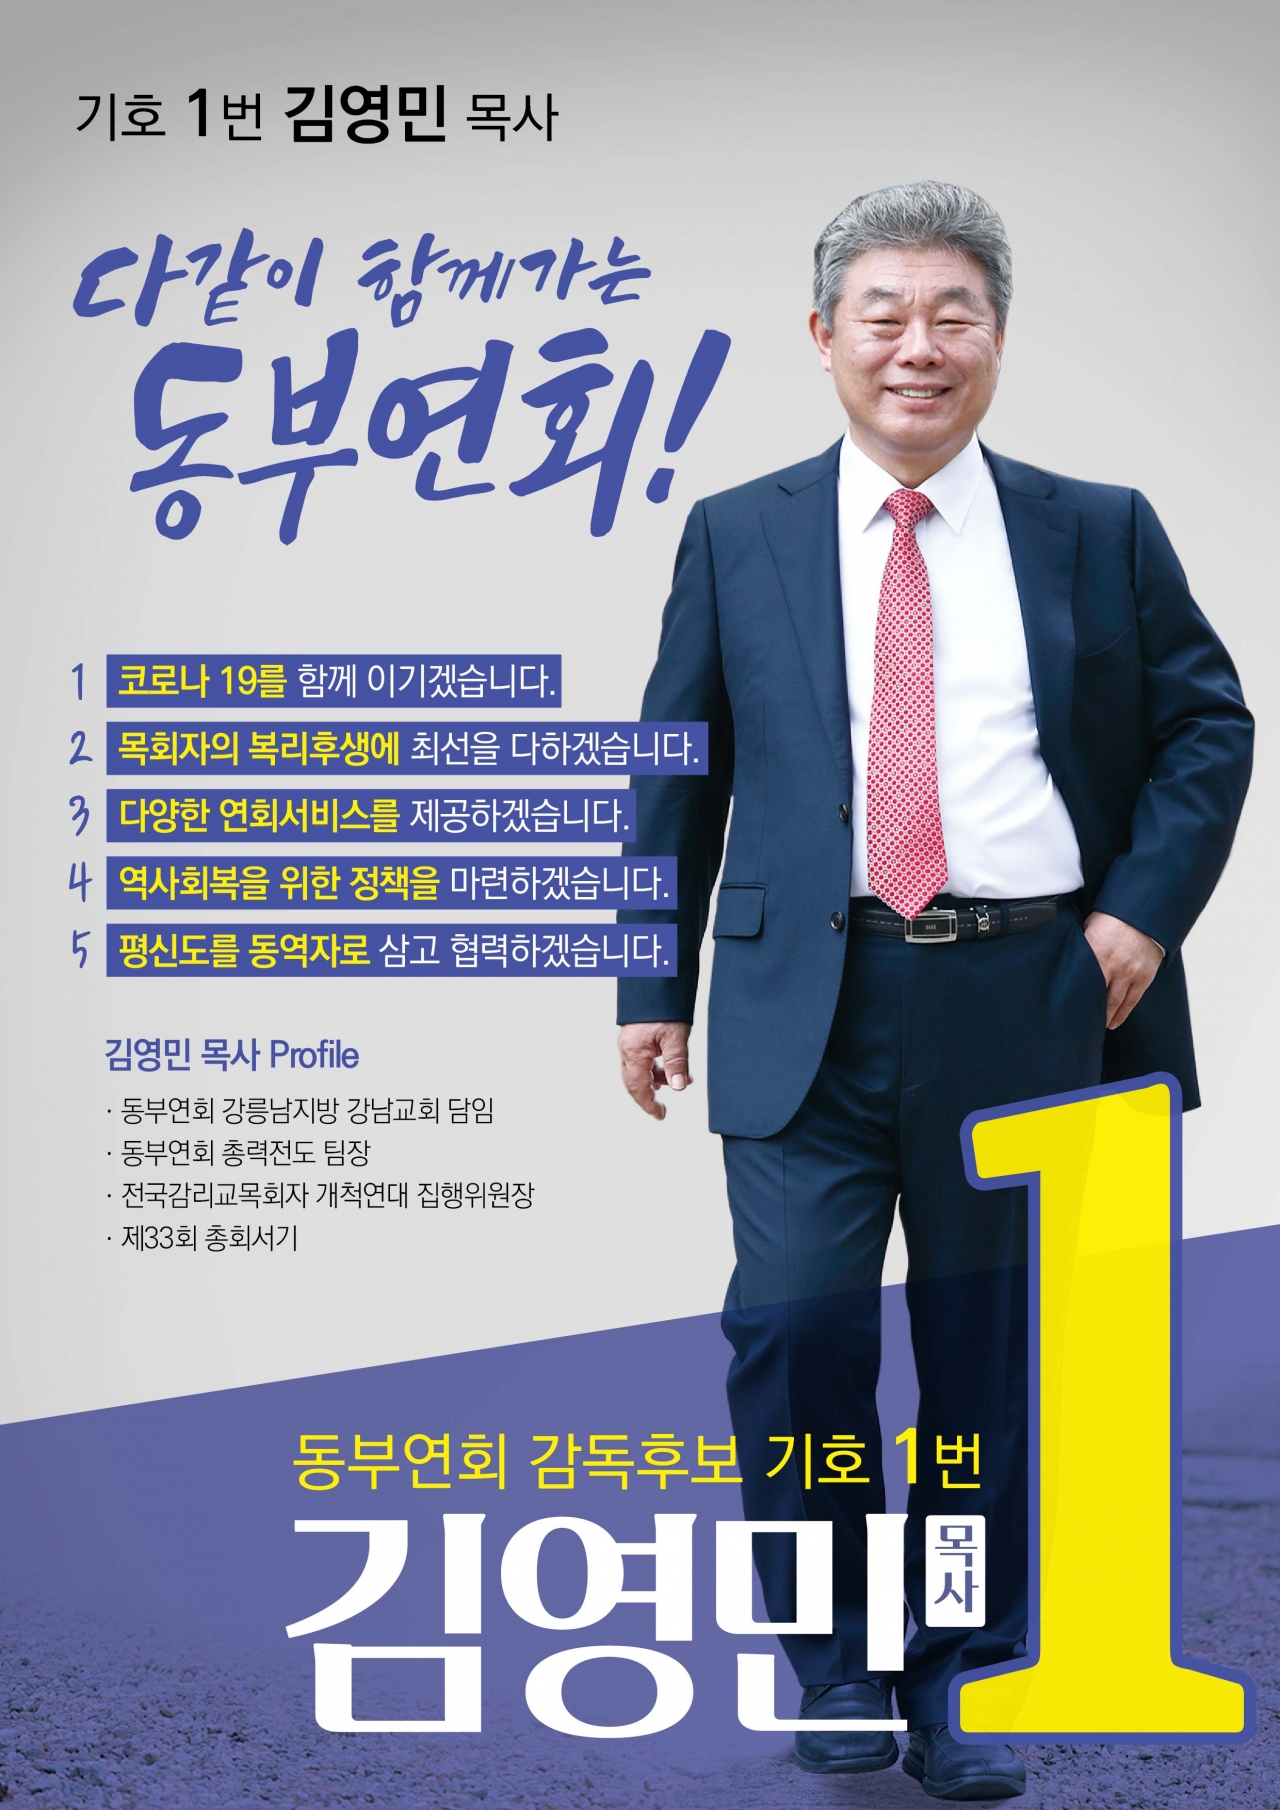 동부연회 기호 1 김영민 후보 02